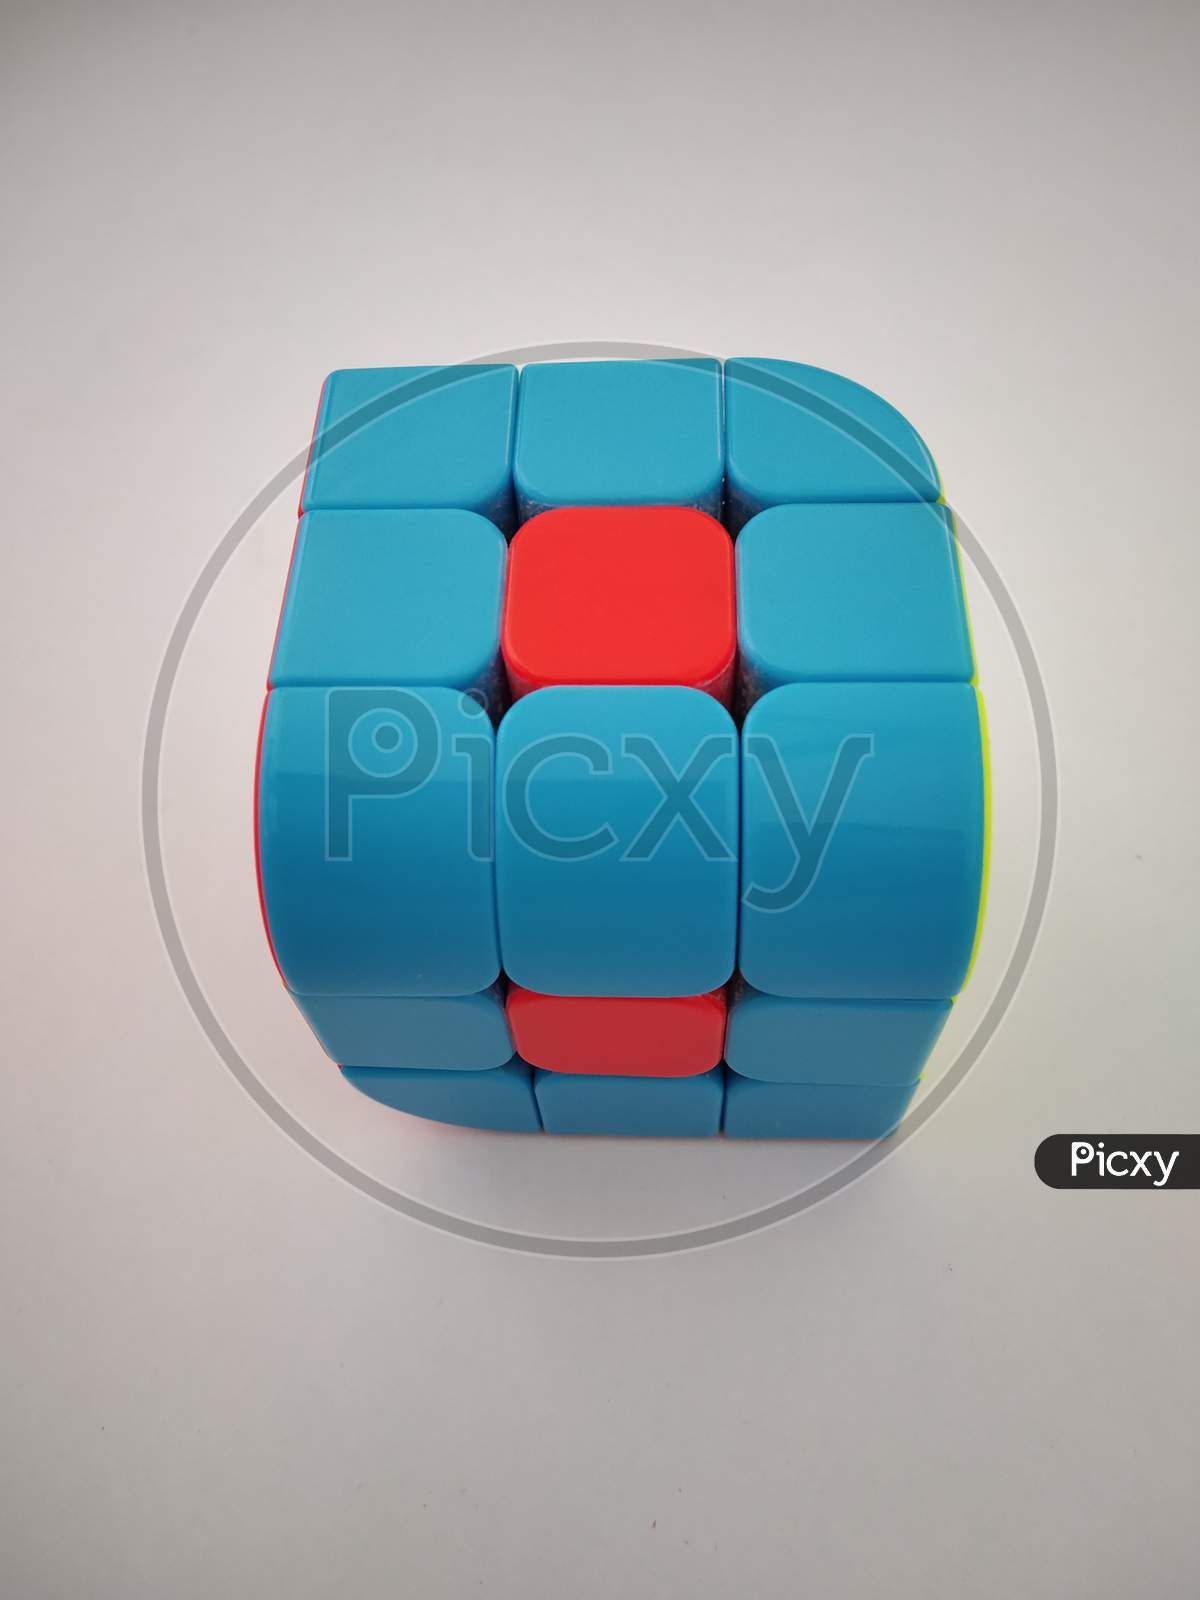 Z Penrose Cube